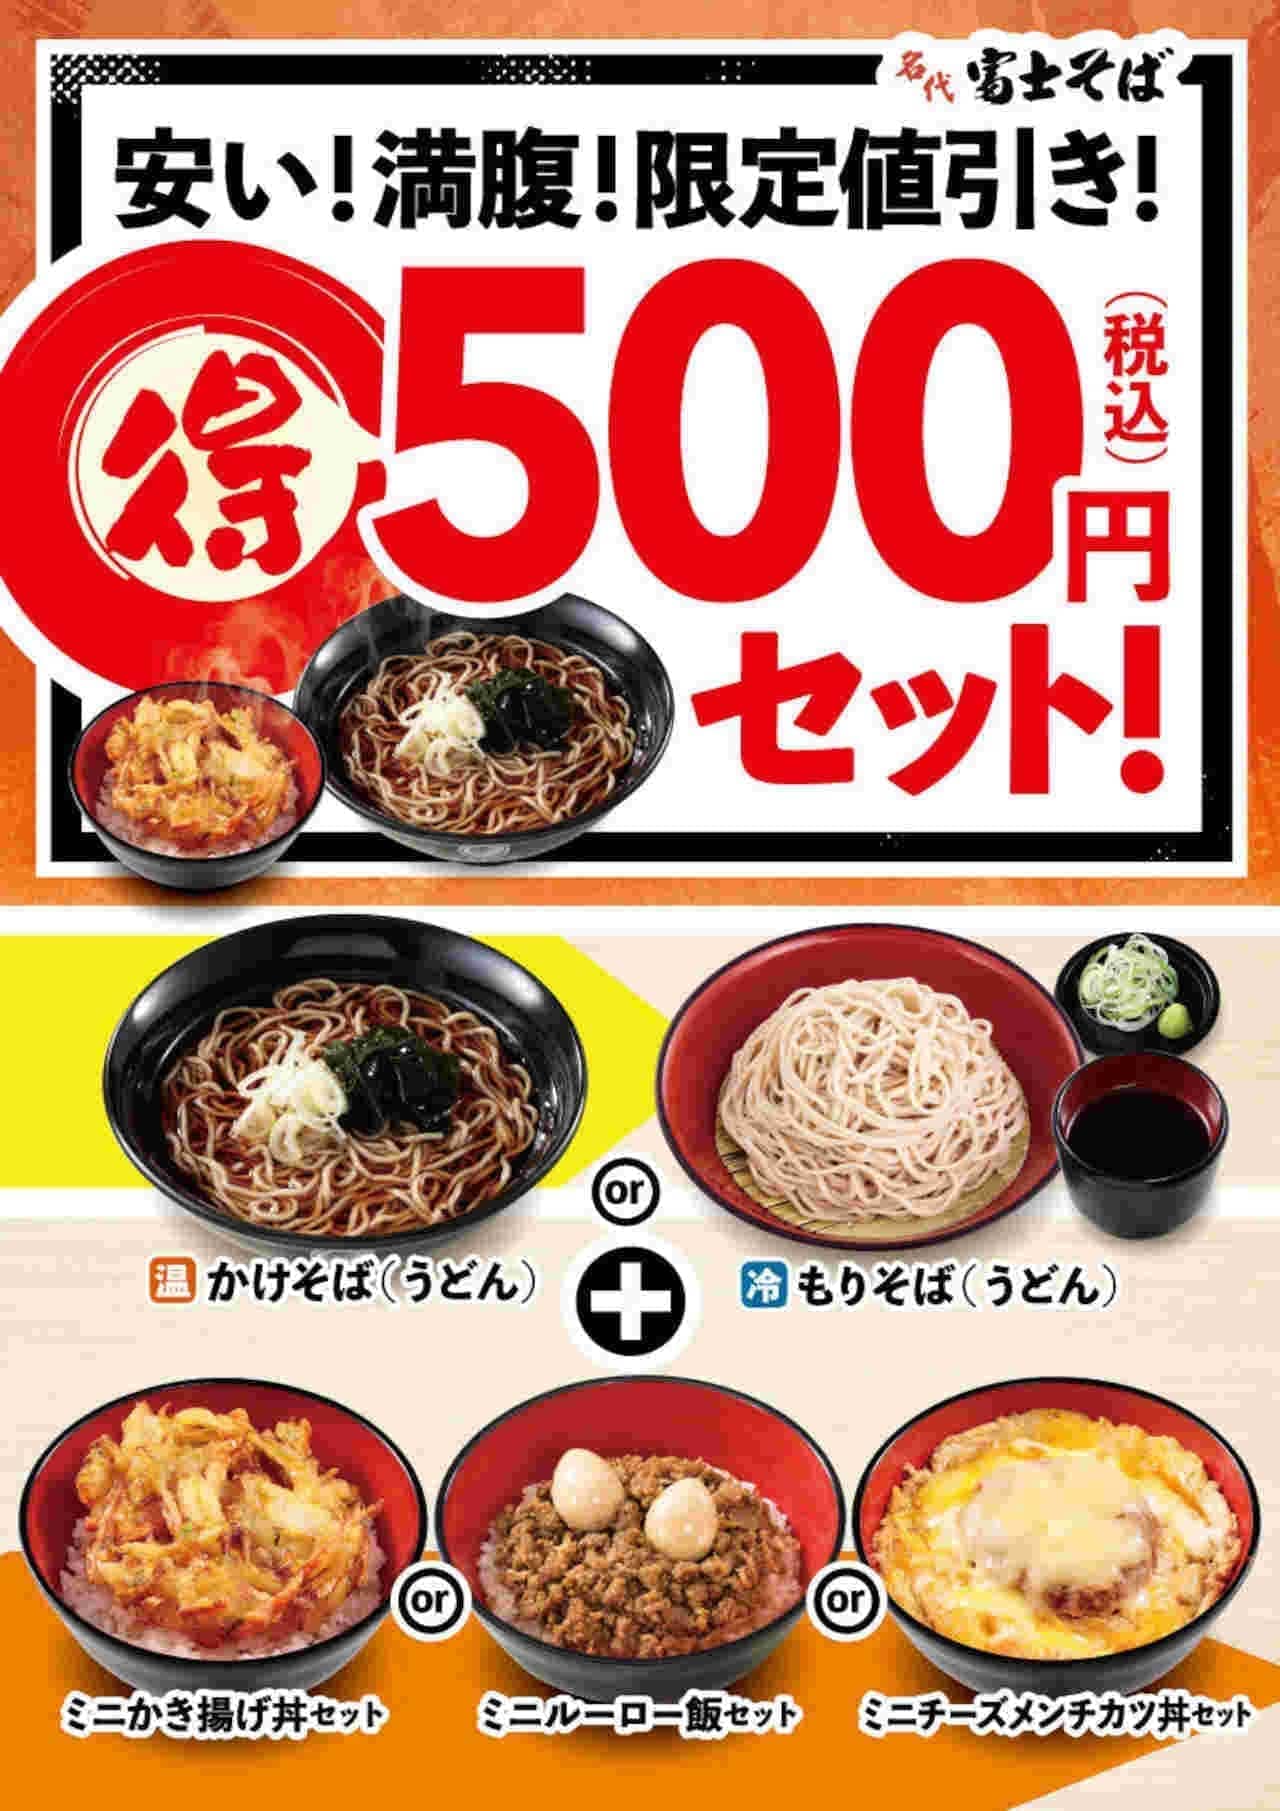 Fuji Soba "NEW 500 yen set".